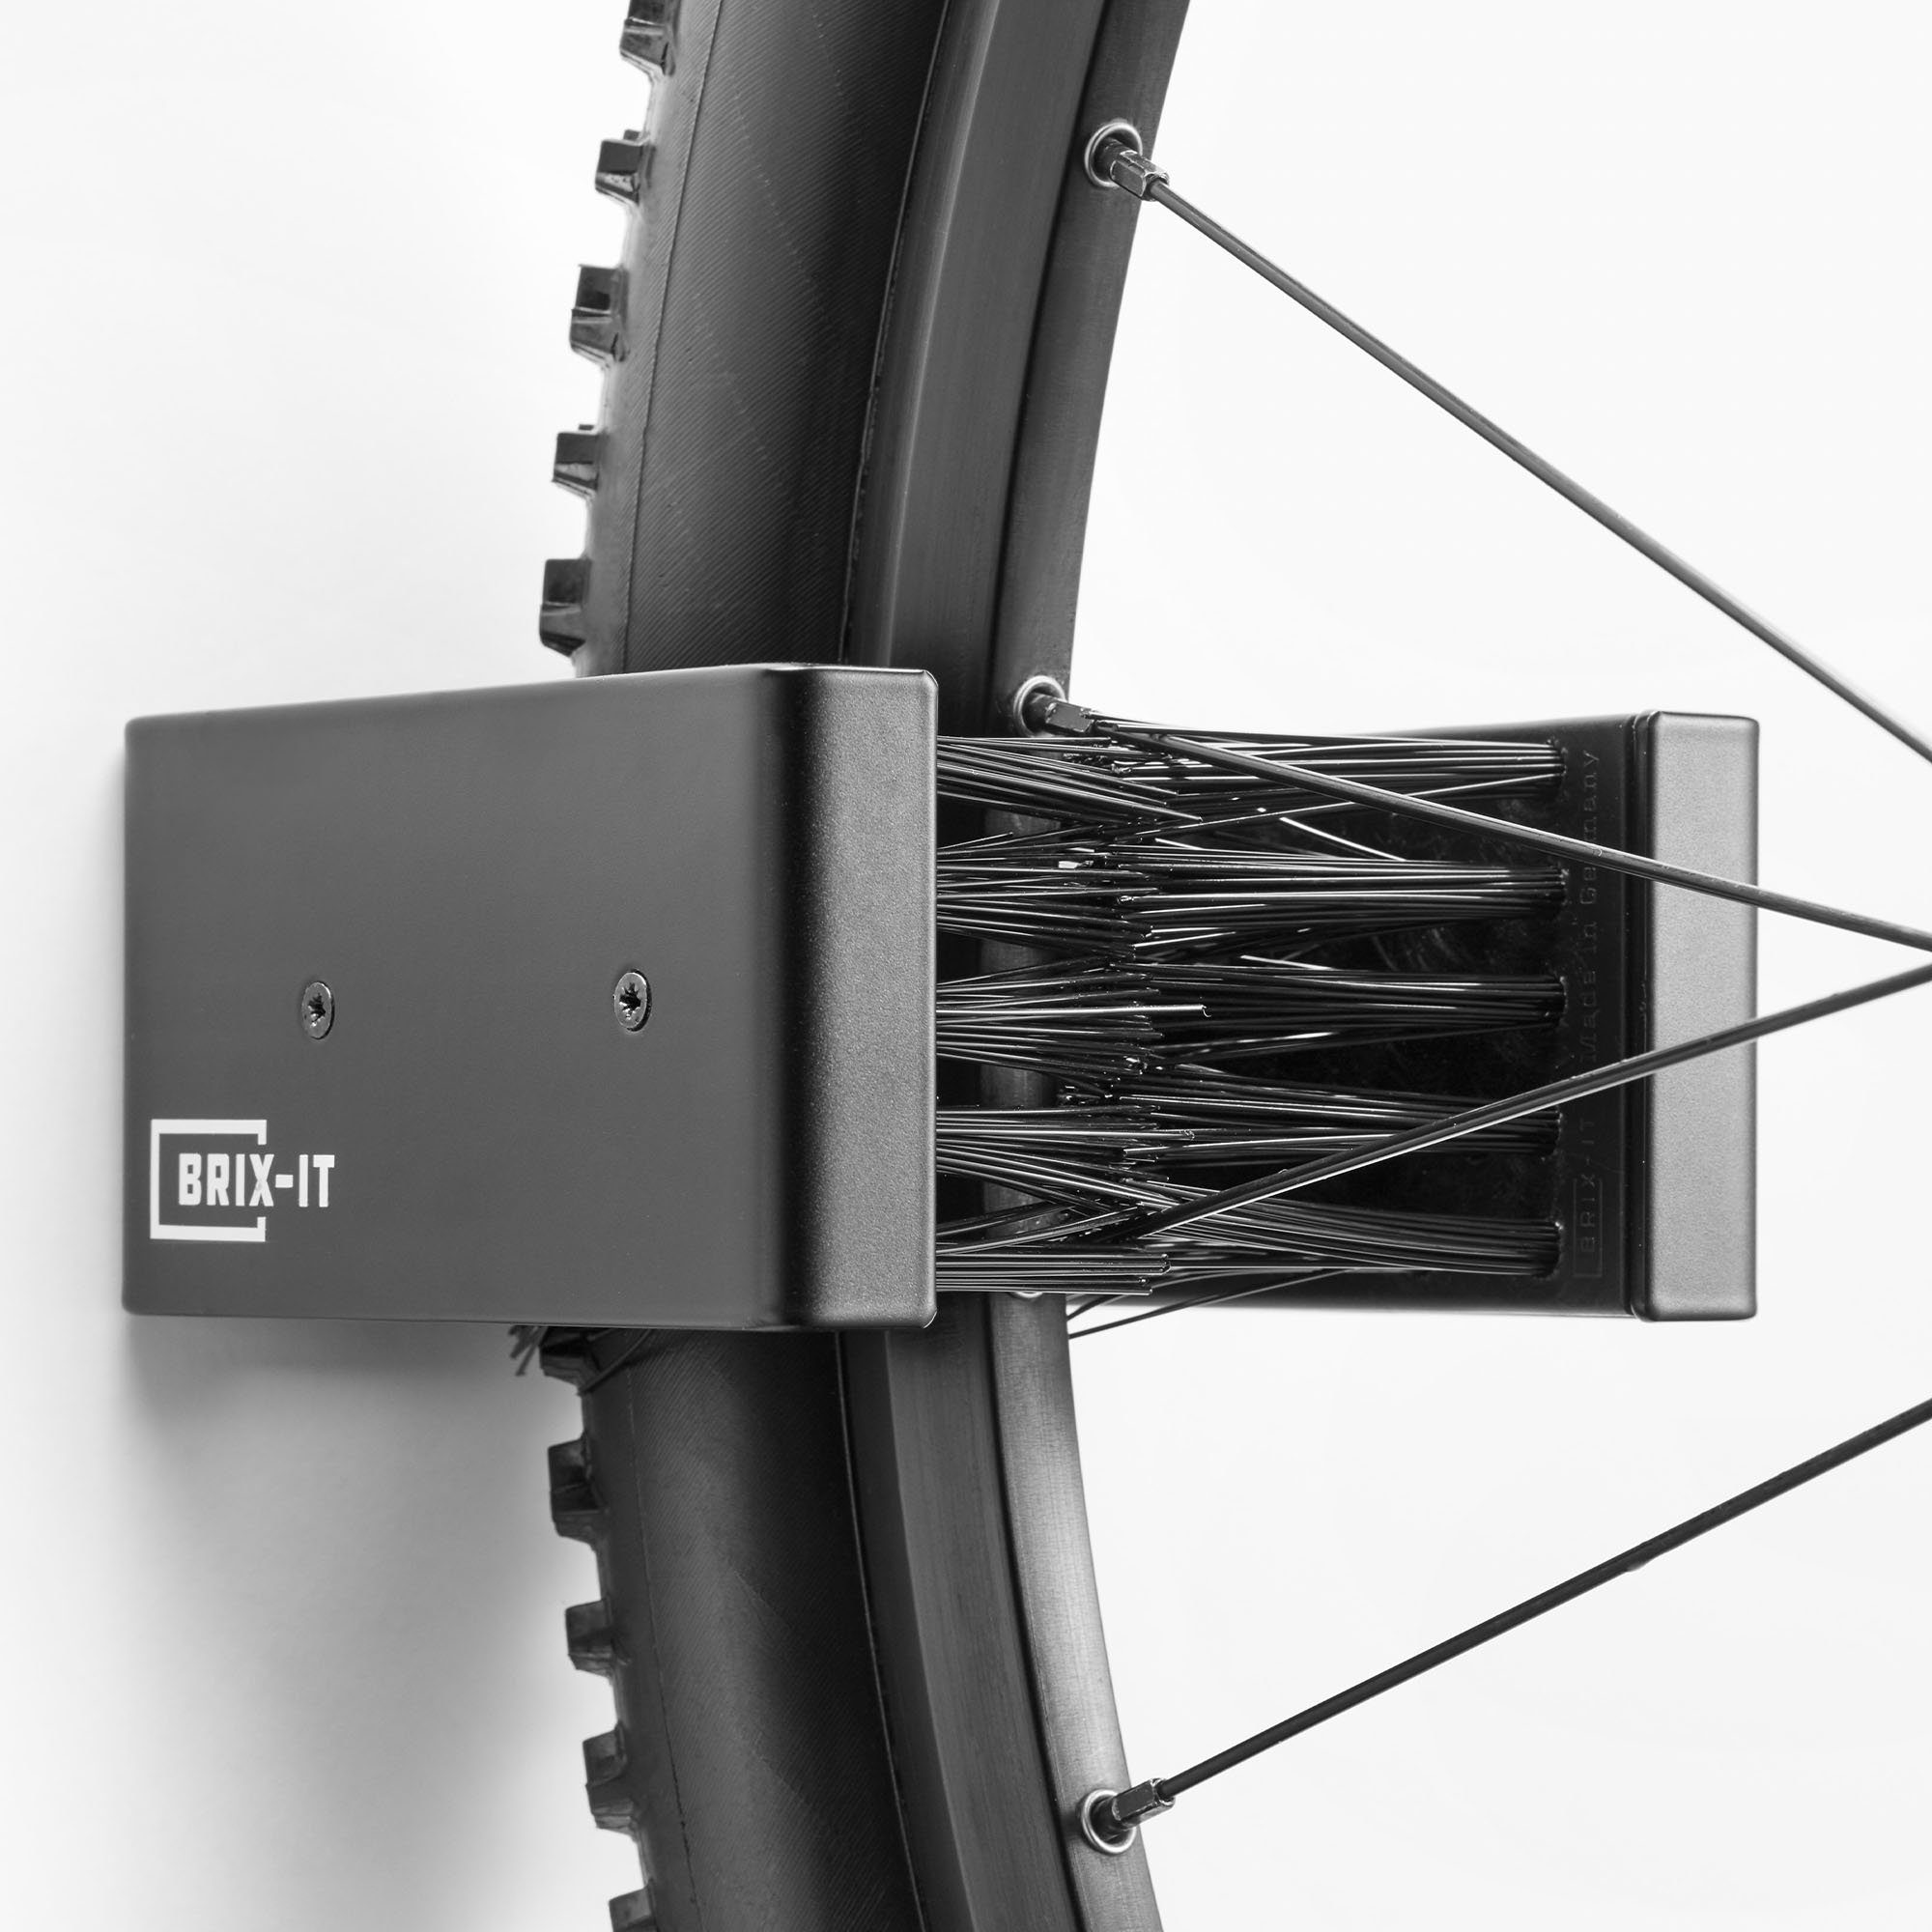 BRIX-IT Fahrradwandhalterung BRIX-IT (mit Montagematerial und Anleitung), Wandhalterung für Fahrräder und E Bikes Fahrradwandhalterung universal schwarz